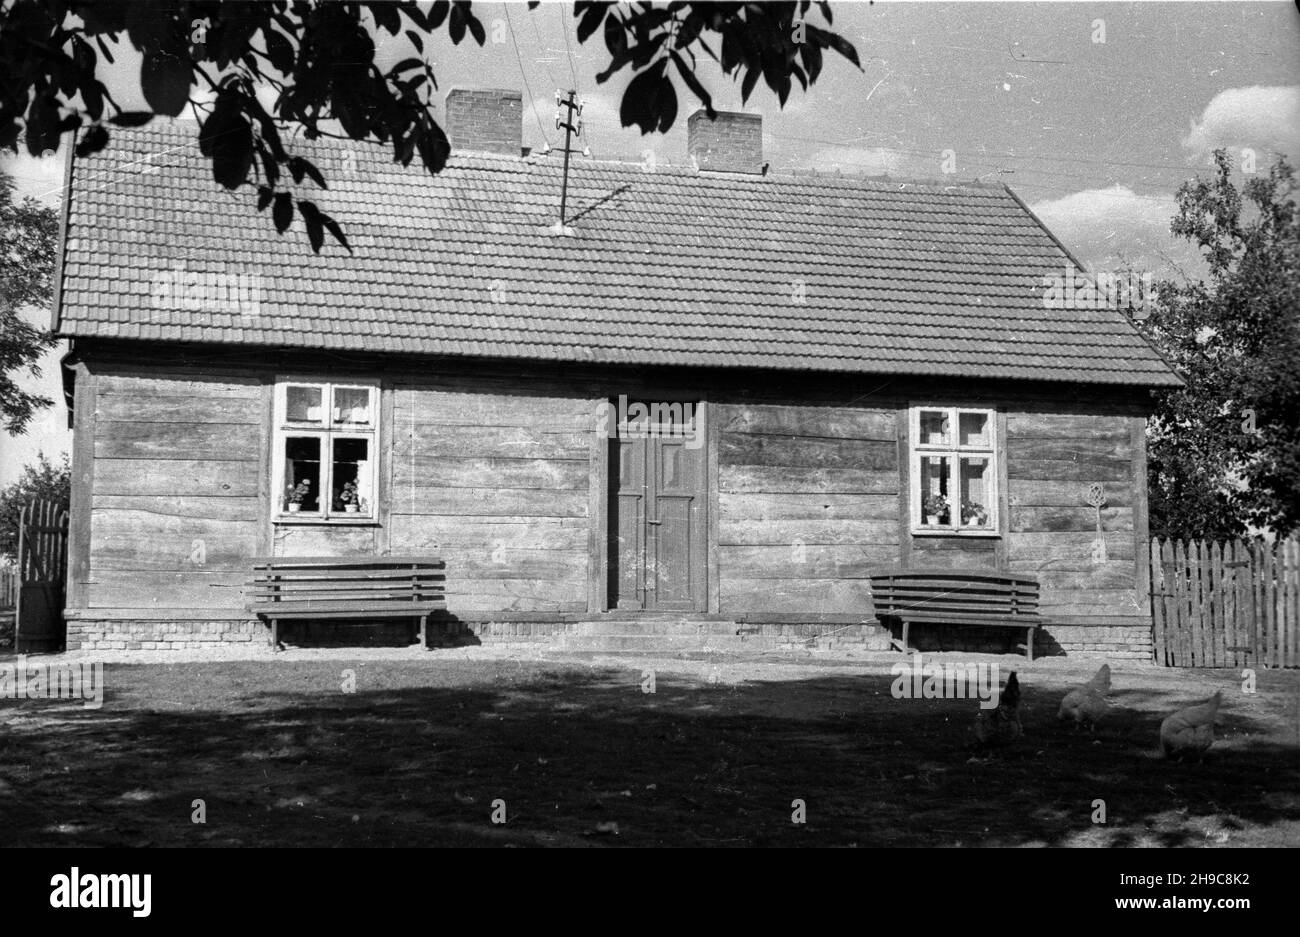 Lisków, 1947-10. Drewniany dom kryty dachówk¹. wb/gr  PAP    Dok³adny dzieñ wydarzenia nieustalony.      Liskow, Oct. 1947. A wooden house roofed with red tiles.  wb/gr  PAP Stock Photo